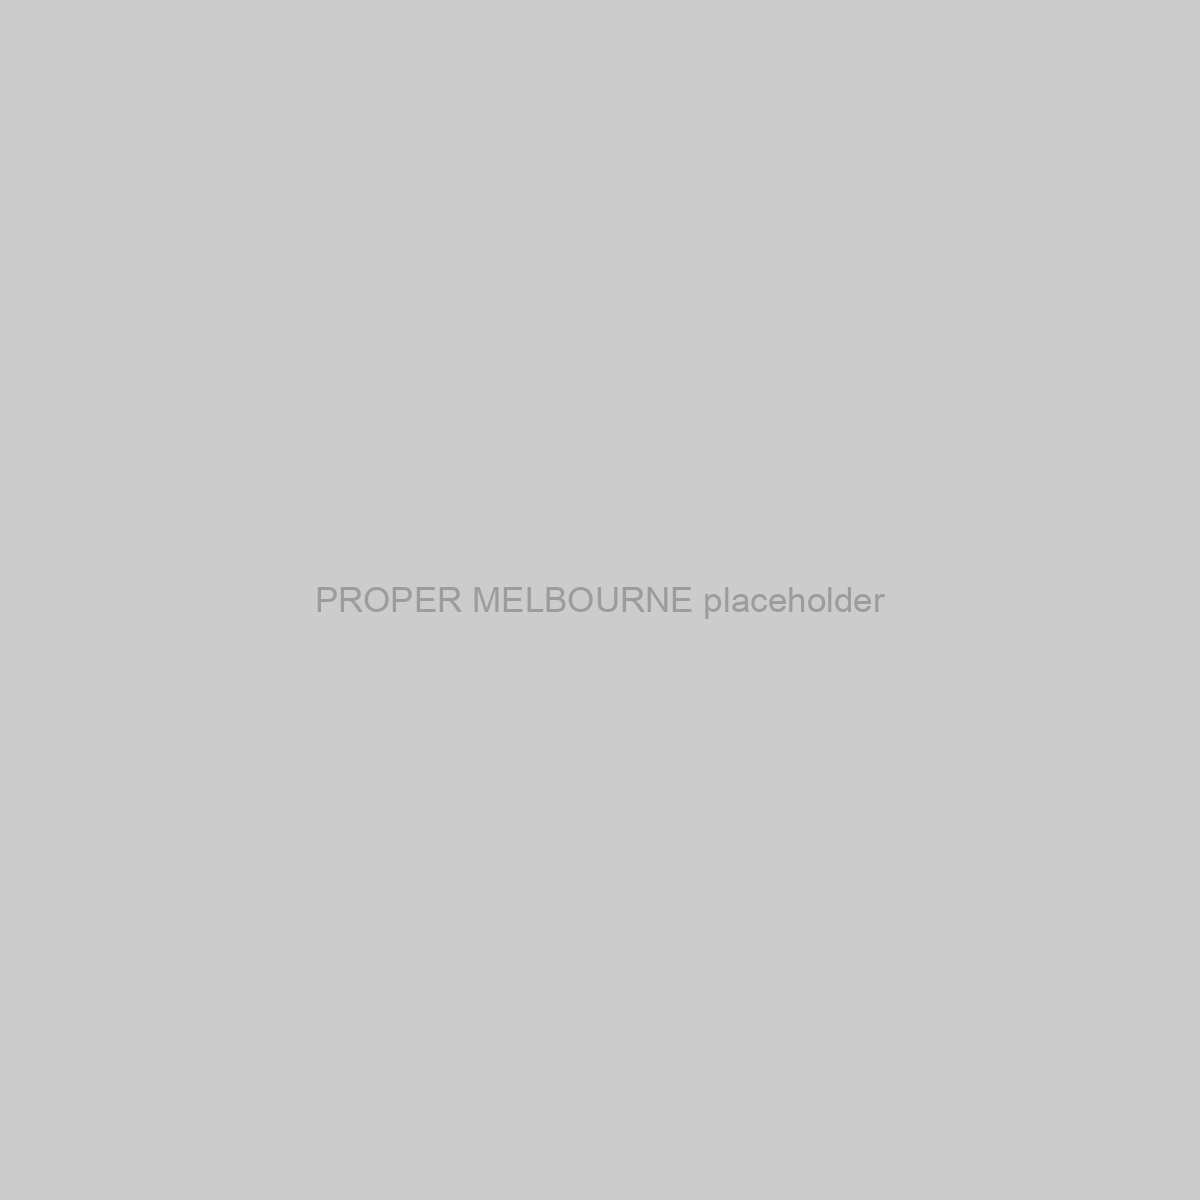 PROPER MELBOURNE Placeholder Image